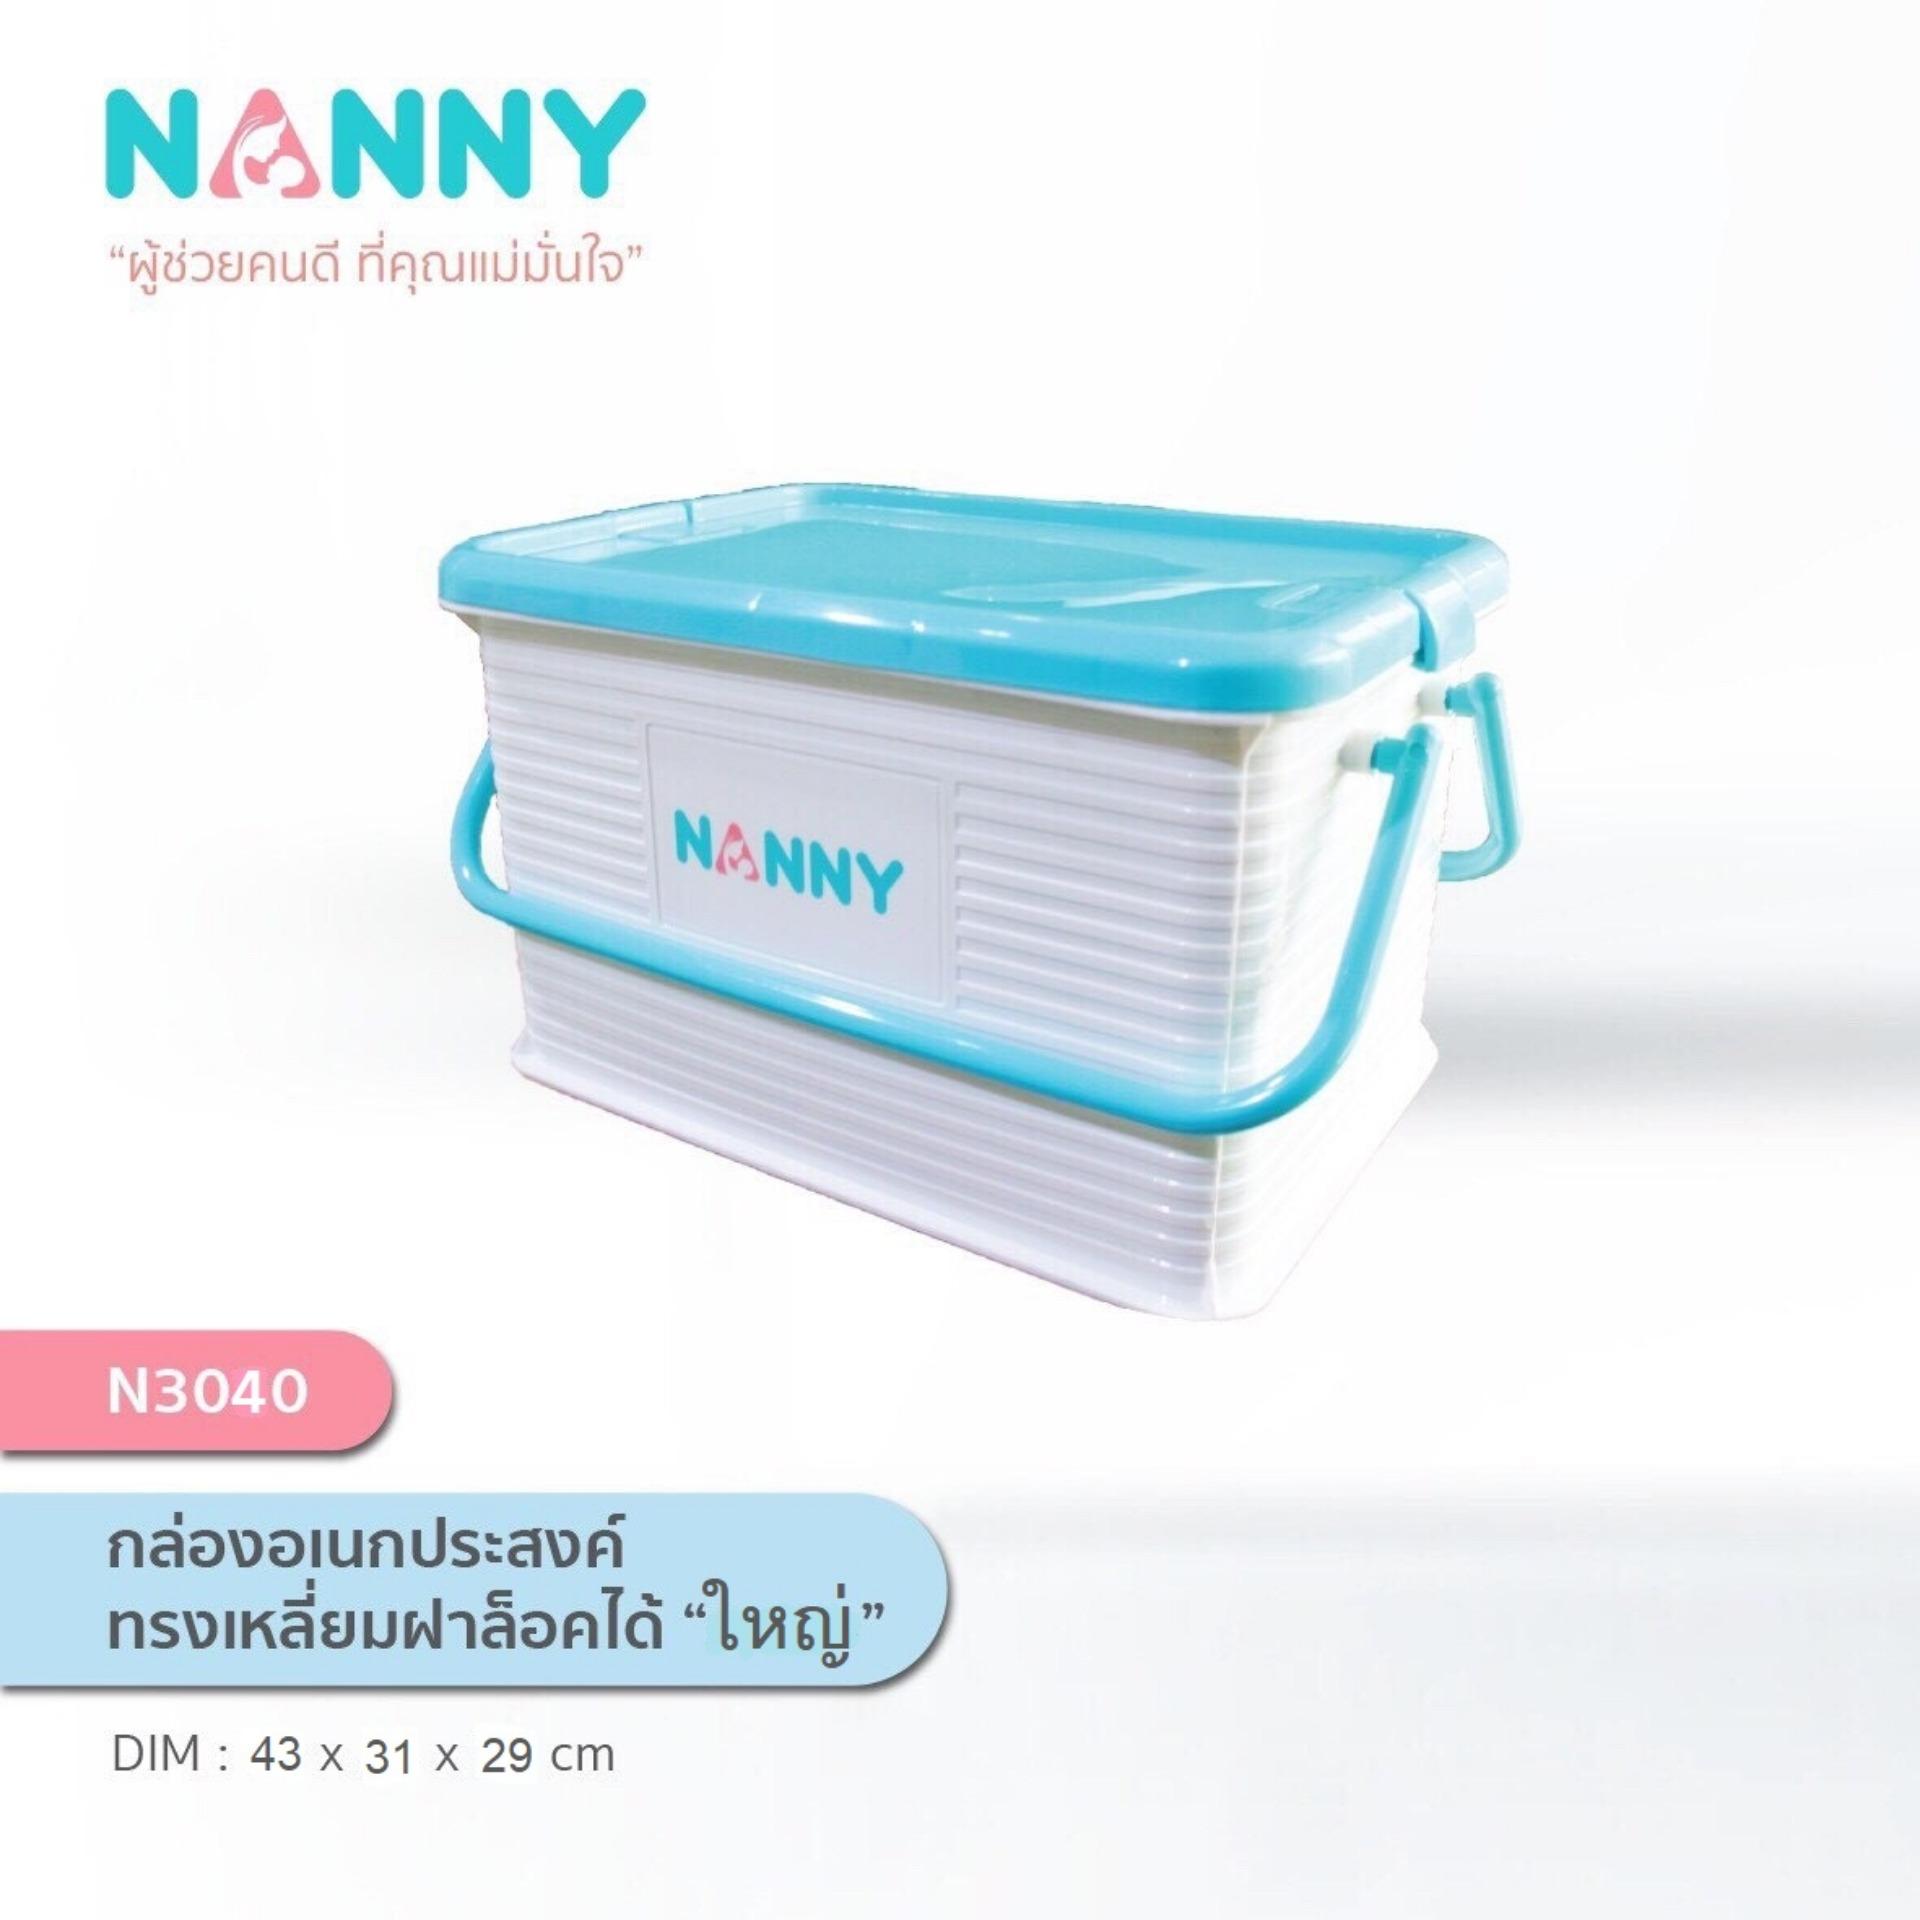 Nanny กล่องใส่ของ N3040